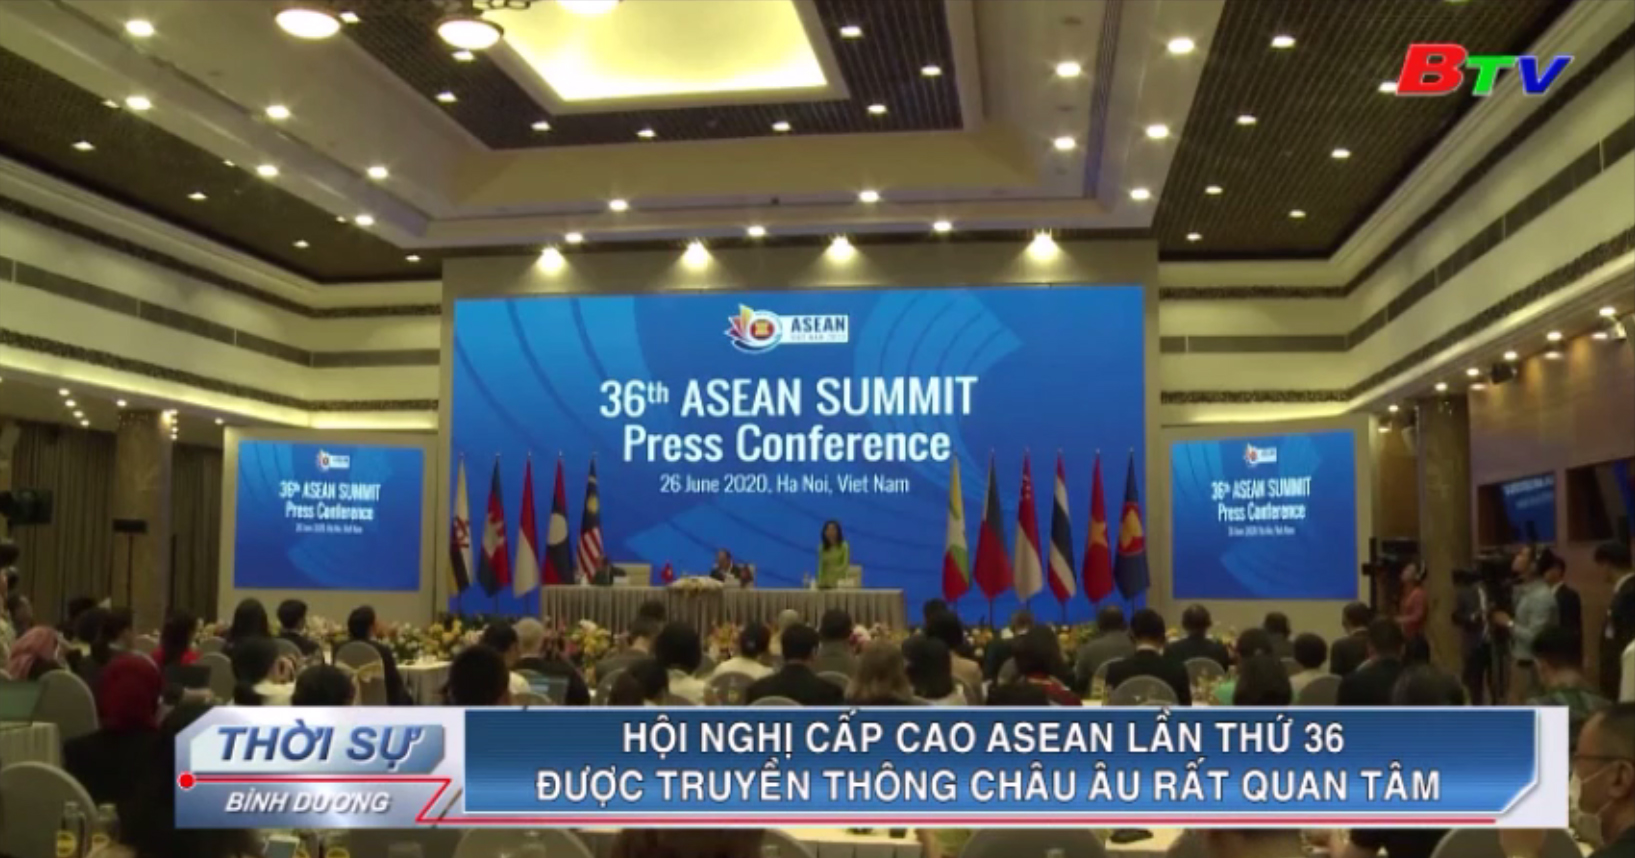 Hội nghị cấp cao ASEAN lần thứ 36 được truyền thông châu Âu rất quan tâm